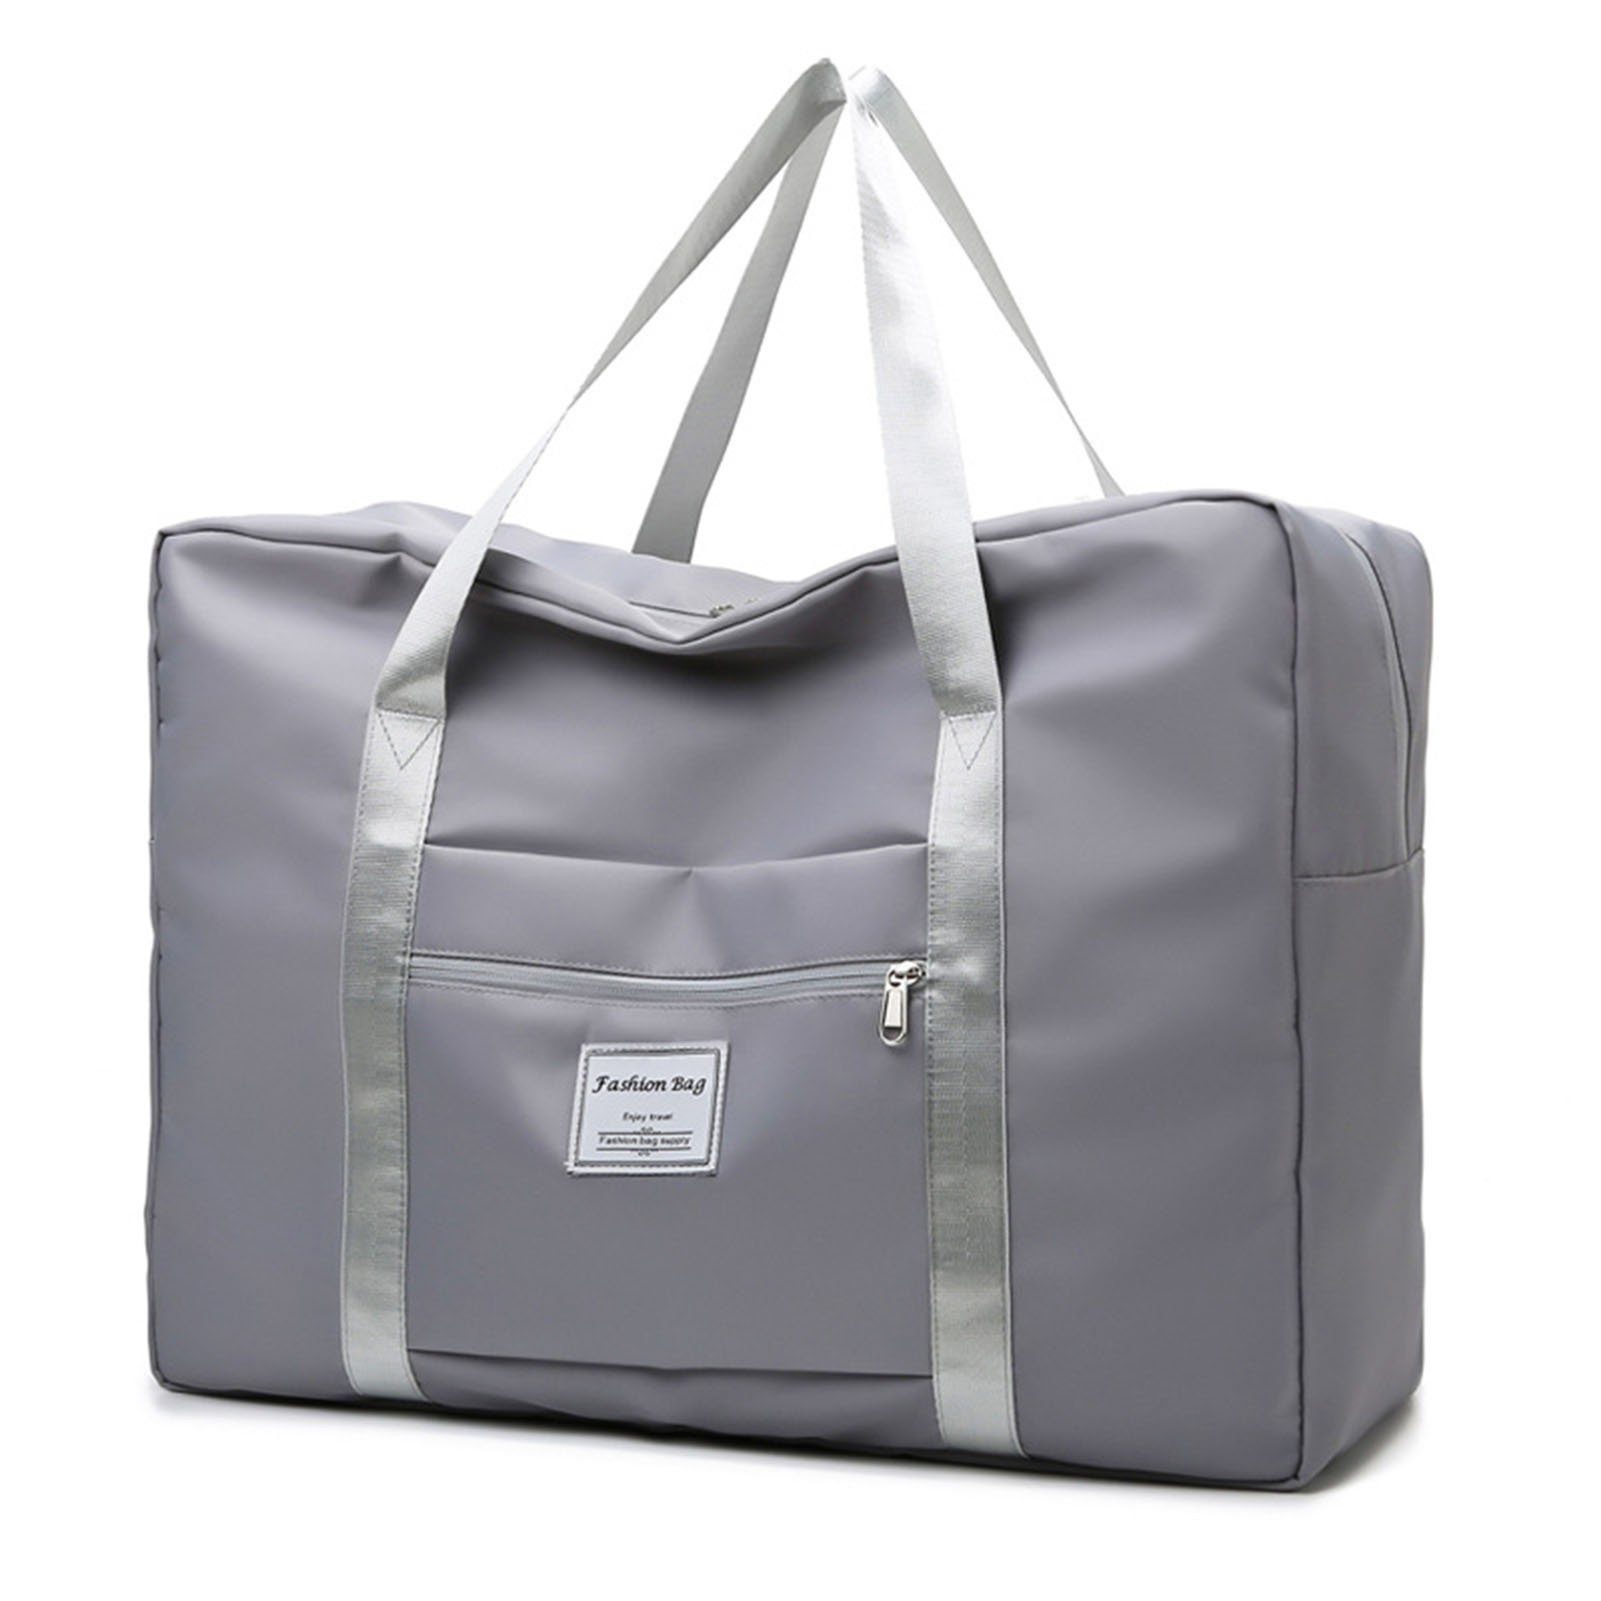 Blusmart Sporttasche Einfarbige, Große Sporttasche Mit Reißverschluss, Große Kapazität light grey